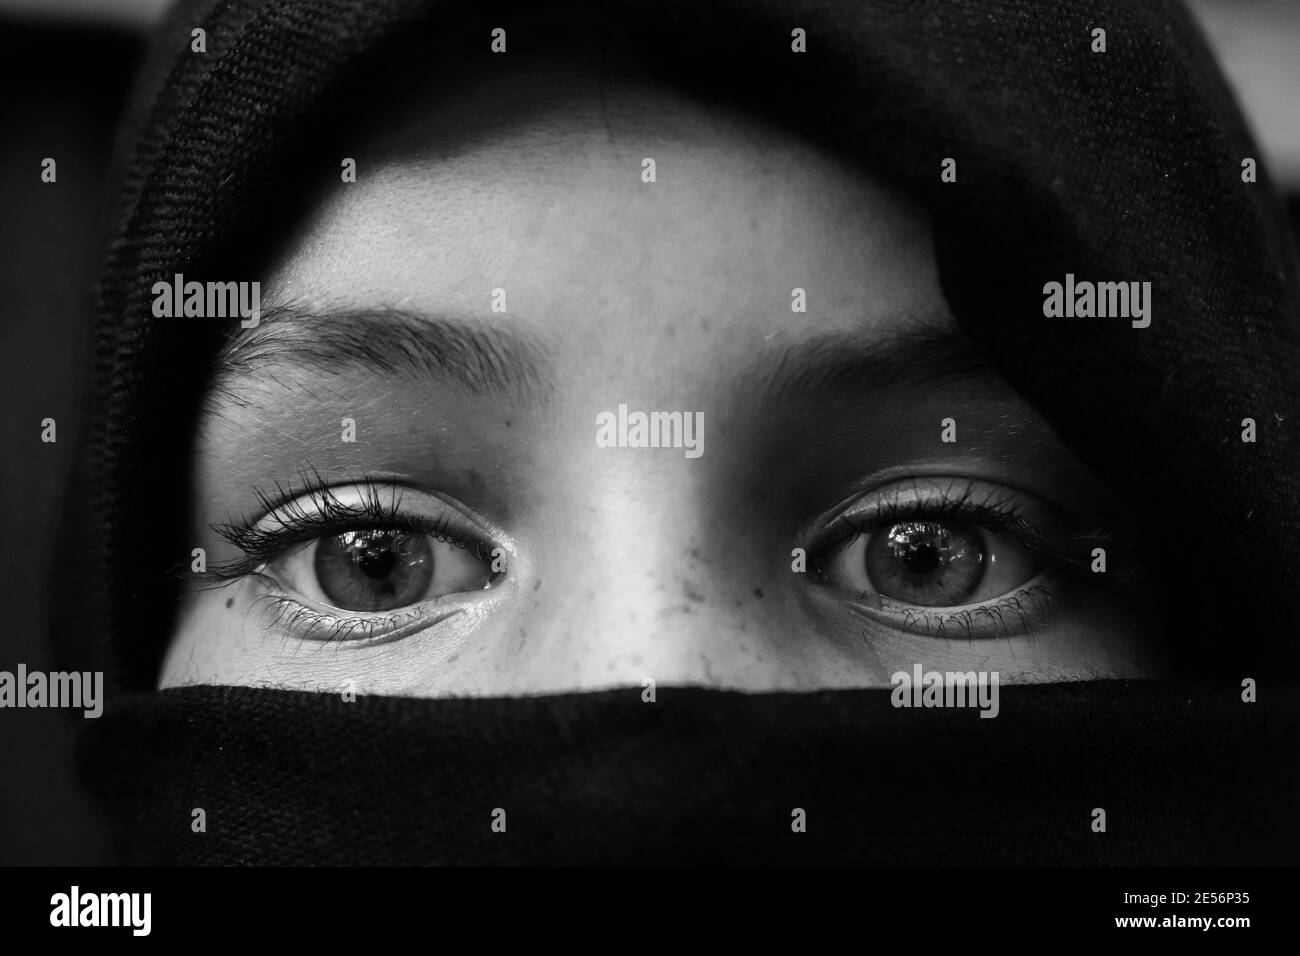 Ritratto in bianco e nero di una persona con copertura facciale Foto Stock